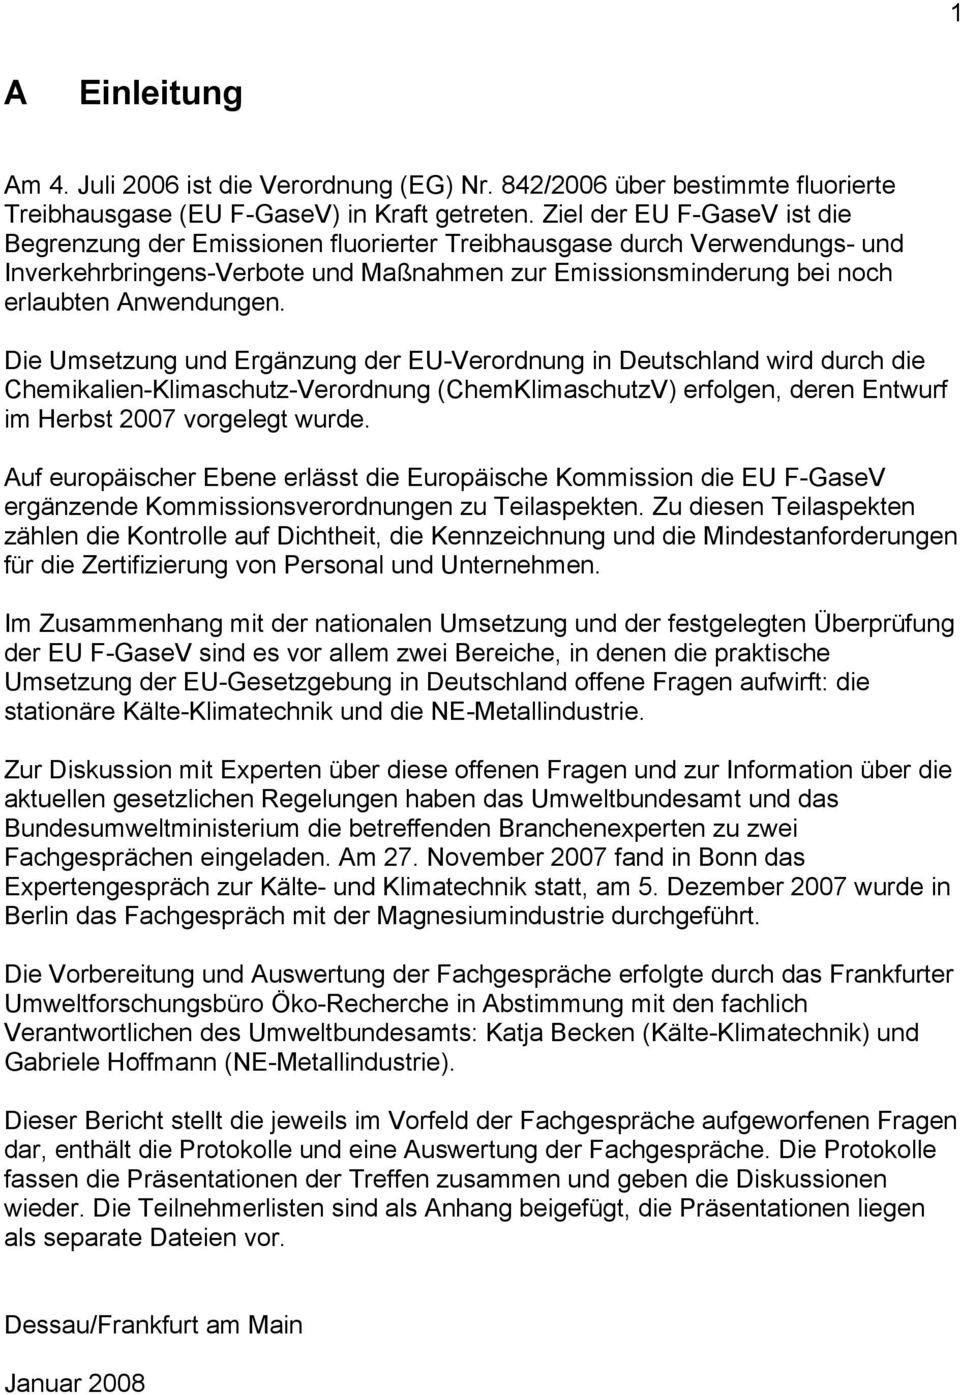 Die Umsetzung und Ergänzung der EU-Verordnung in Deutschland wird durch die Chemikalien-Klimaschutz-Verordnung (ChemKlimaschutzV) erfolgen, deren Entwurf im Herbst 2007 vorgelegt wurde.